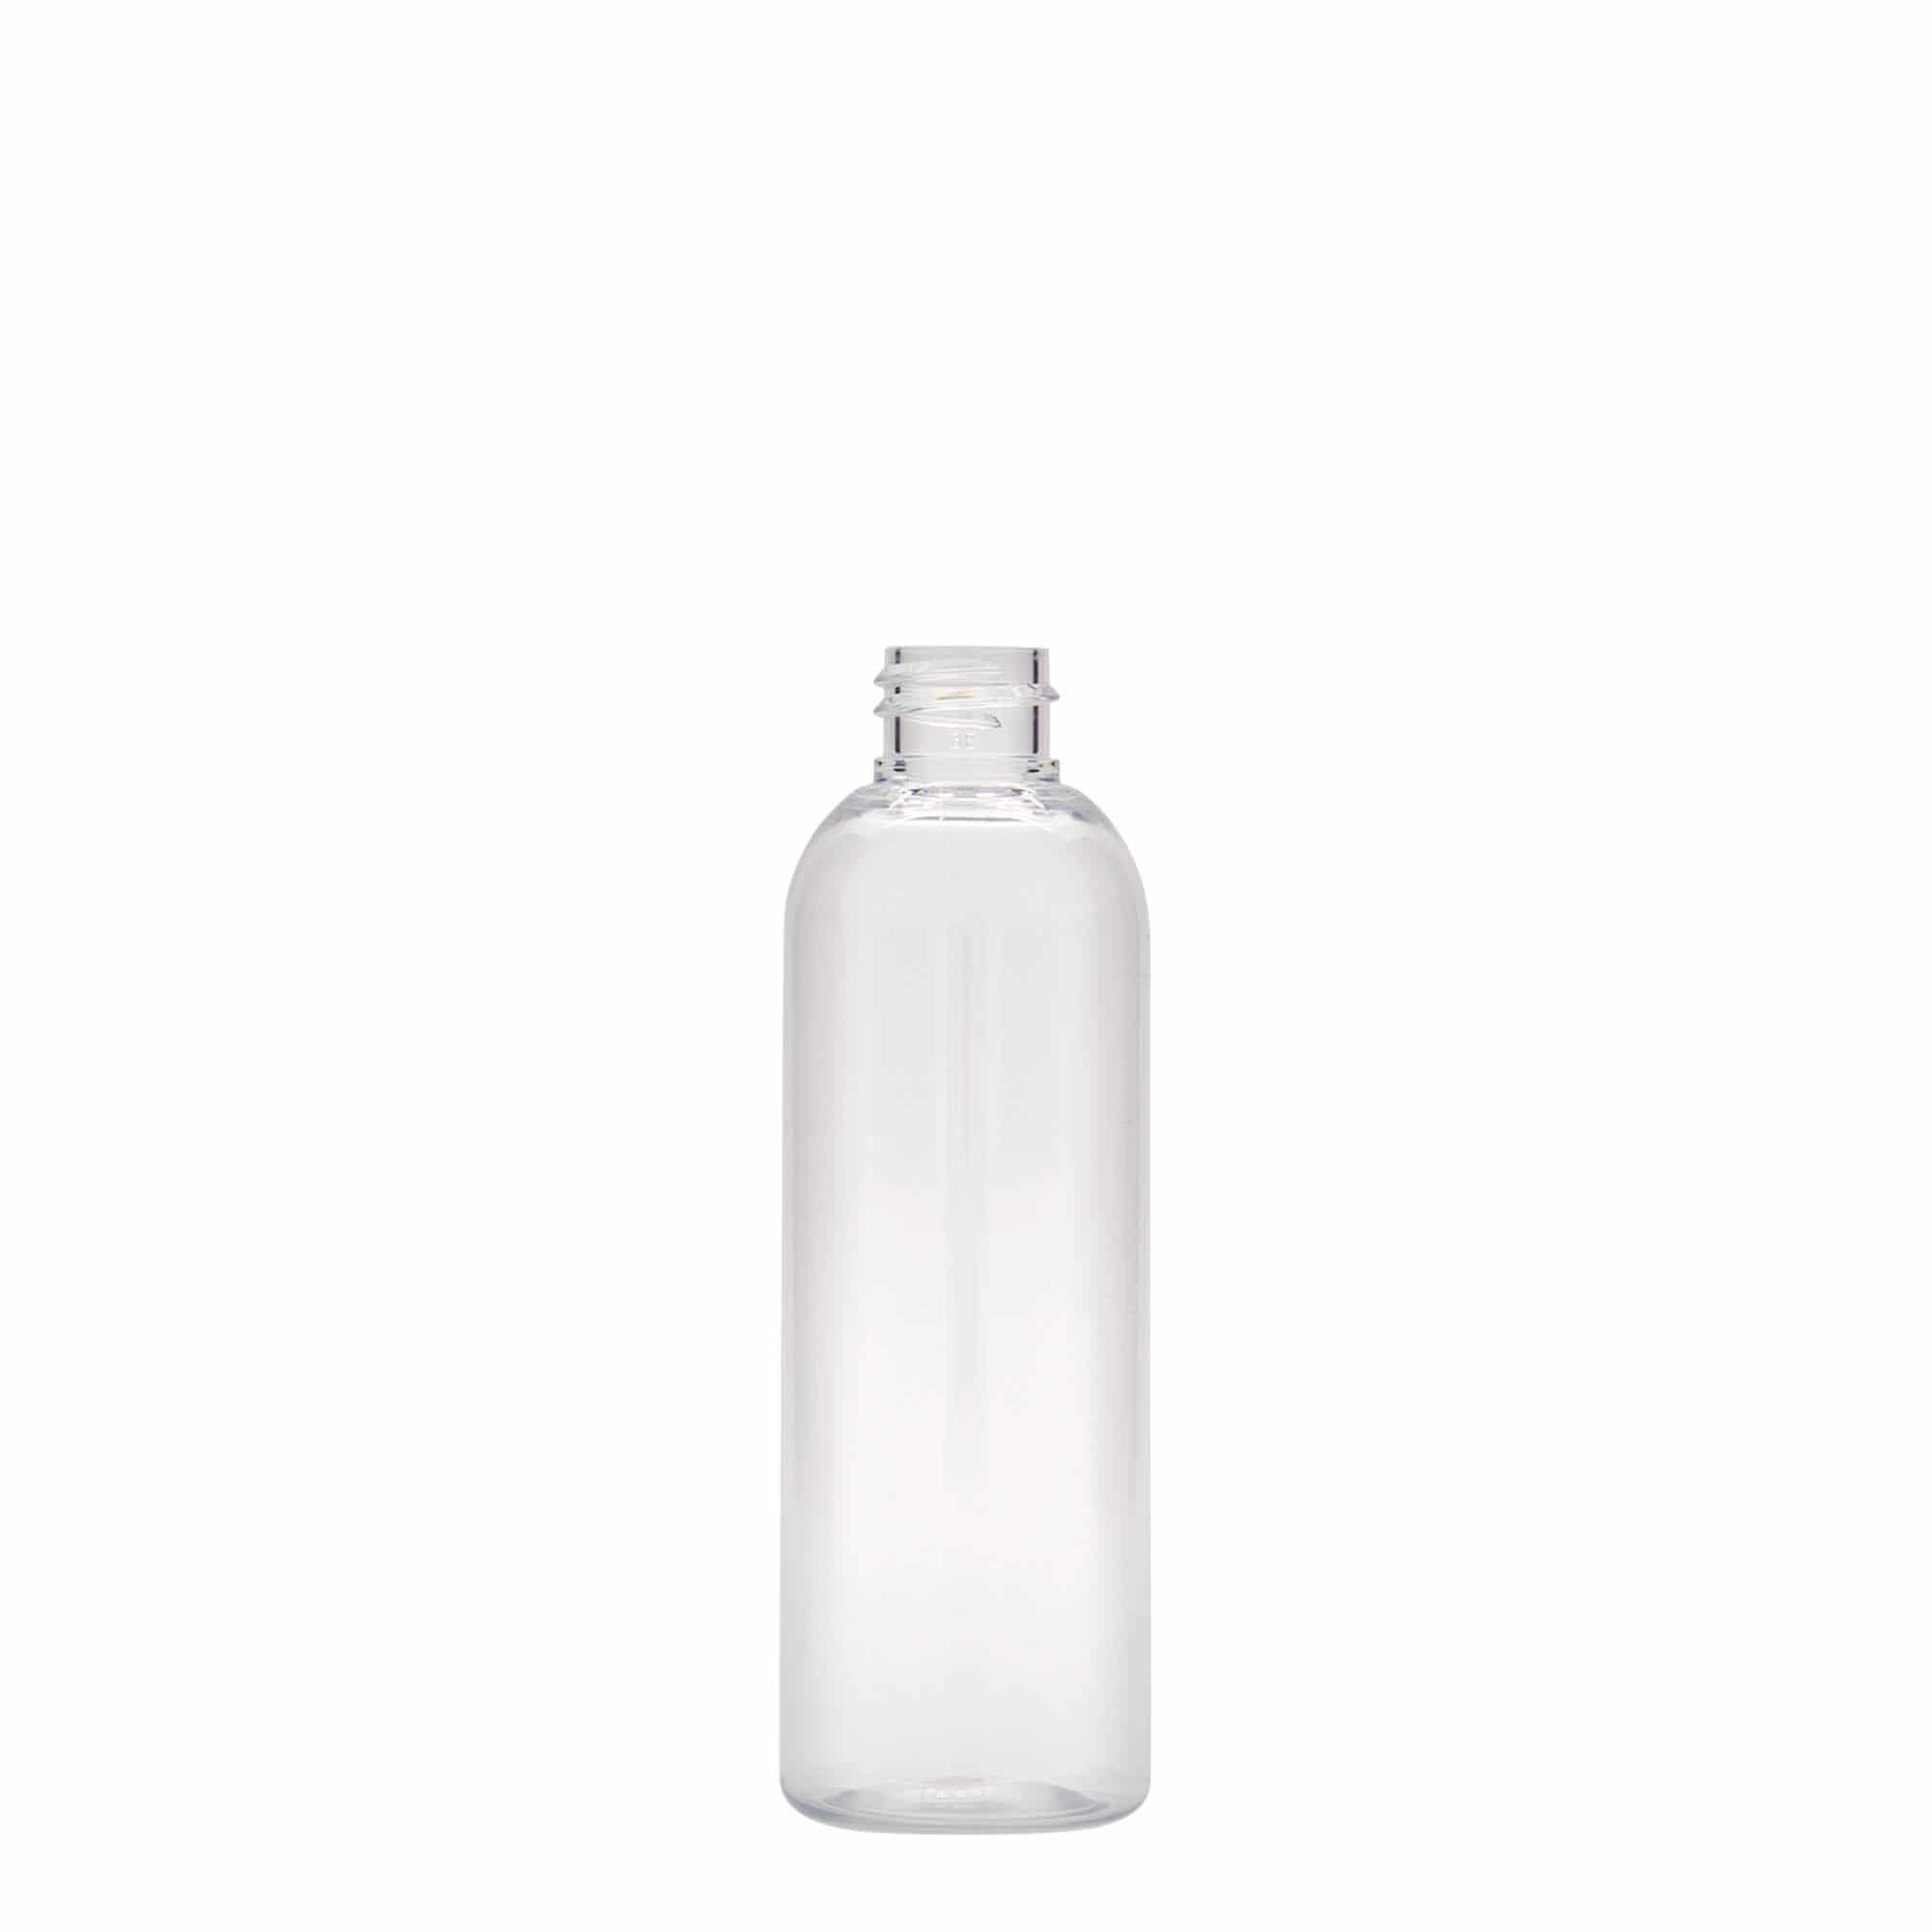 100 ml PET bottle 'Pegasus', plastic, closure: GPI 20/410